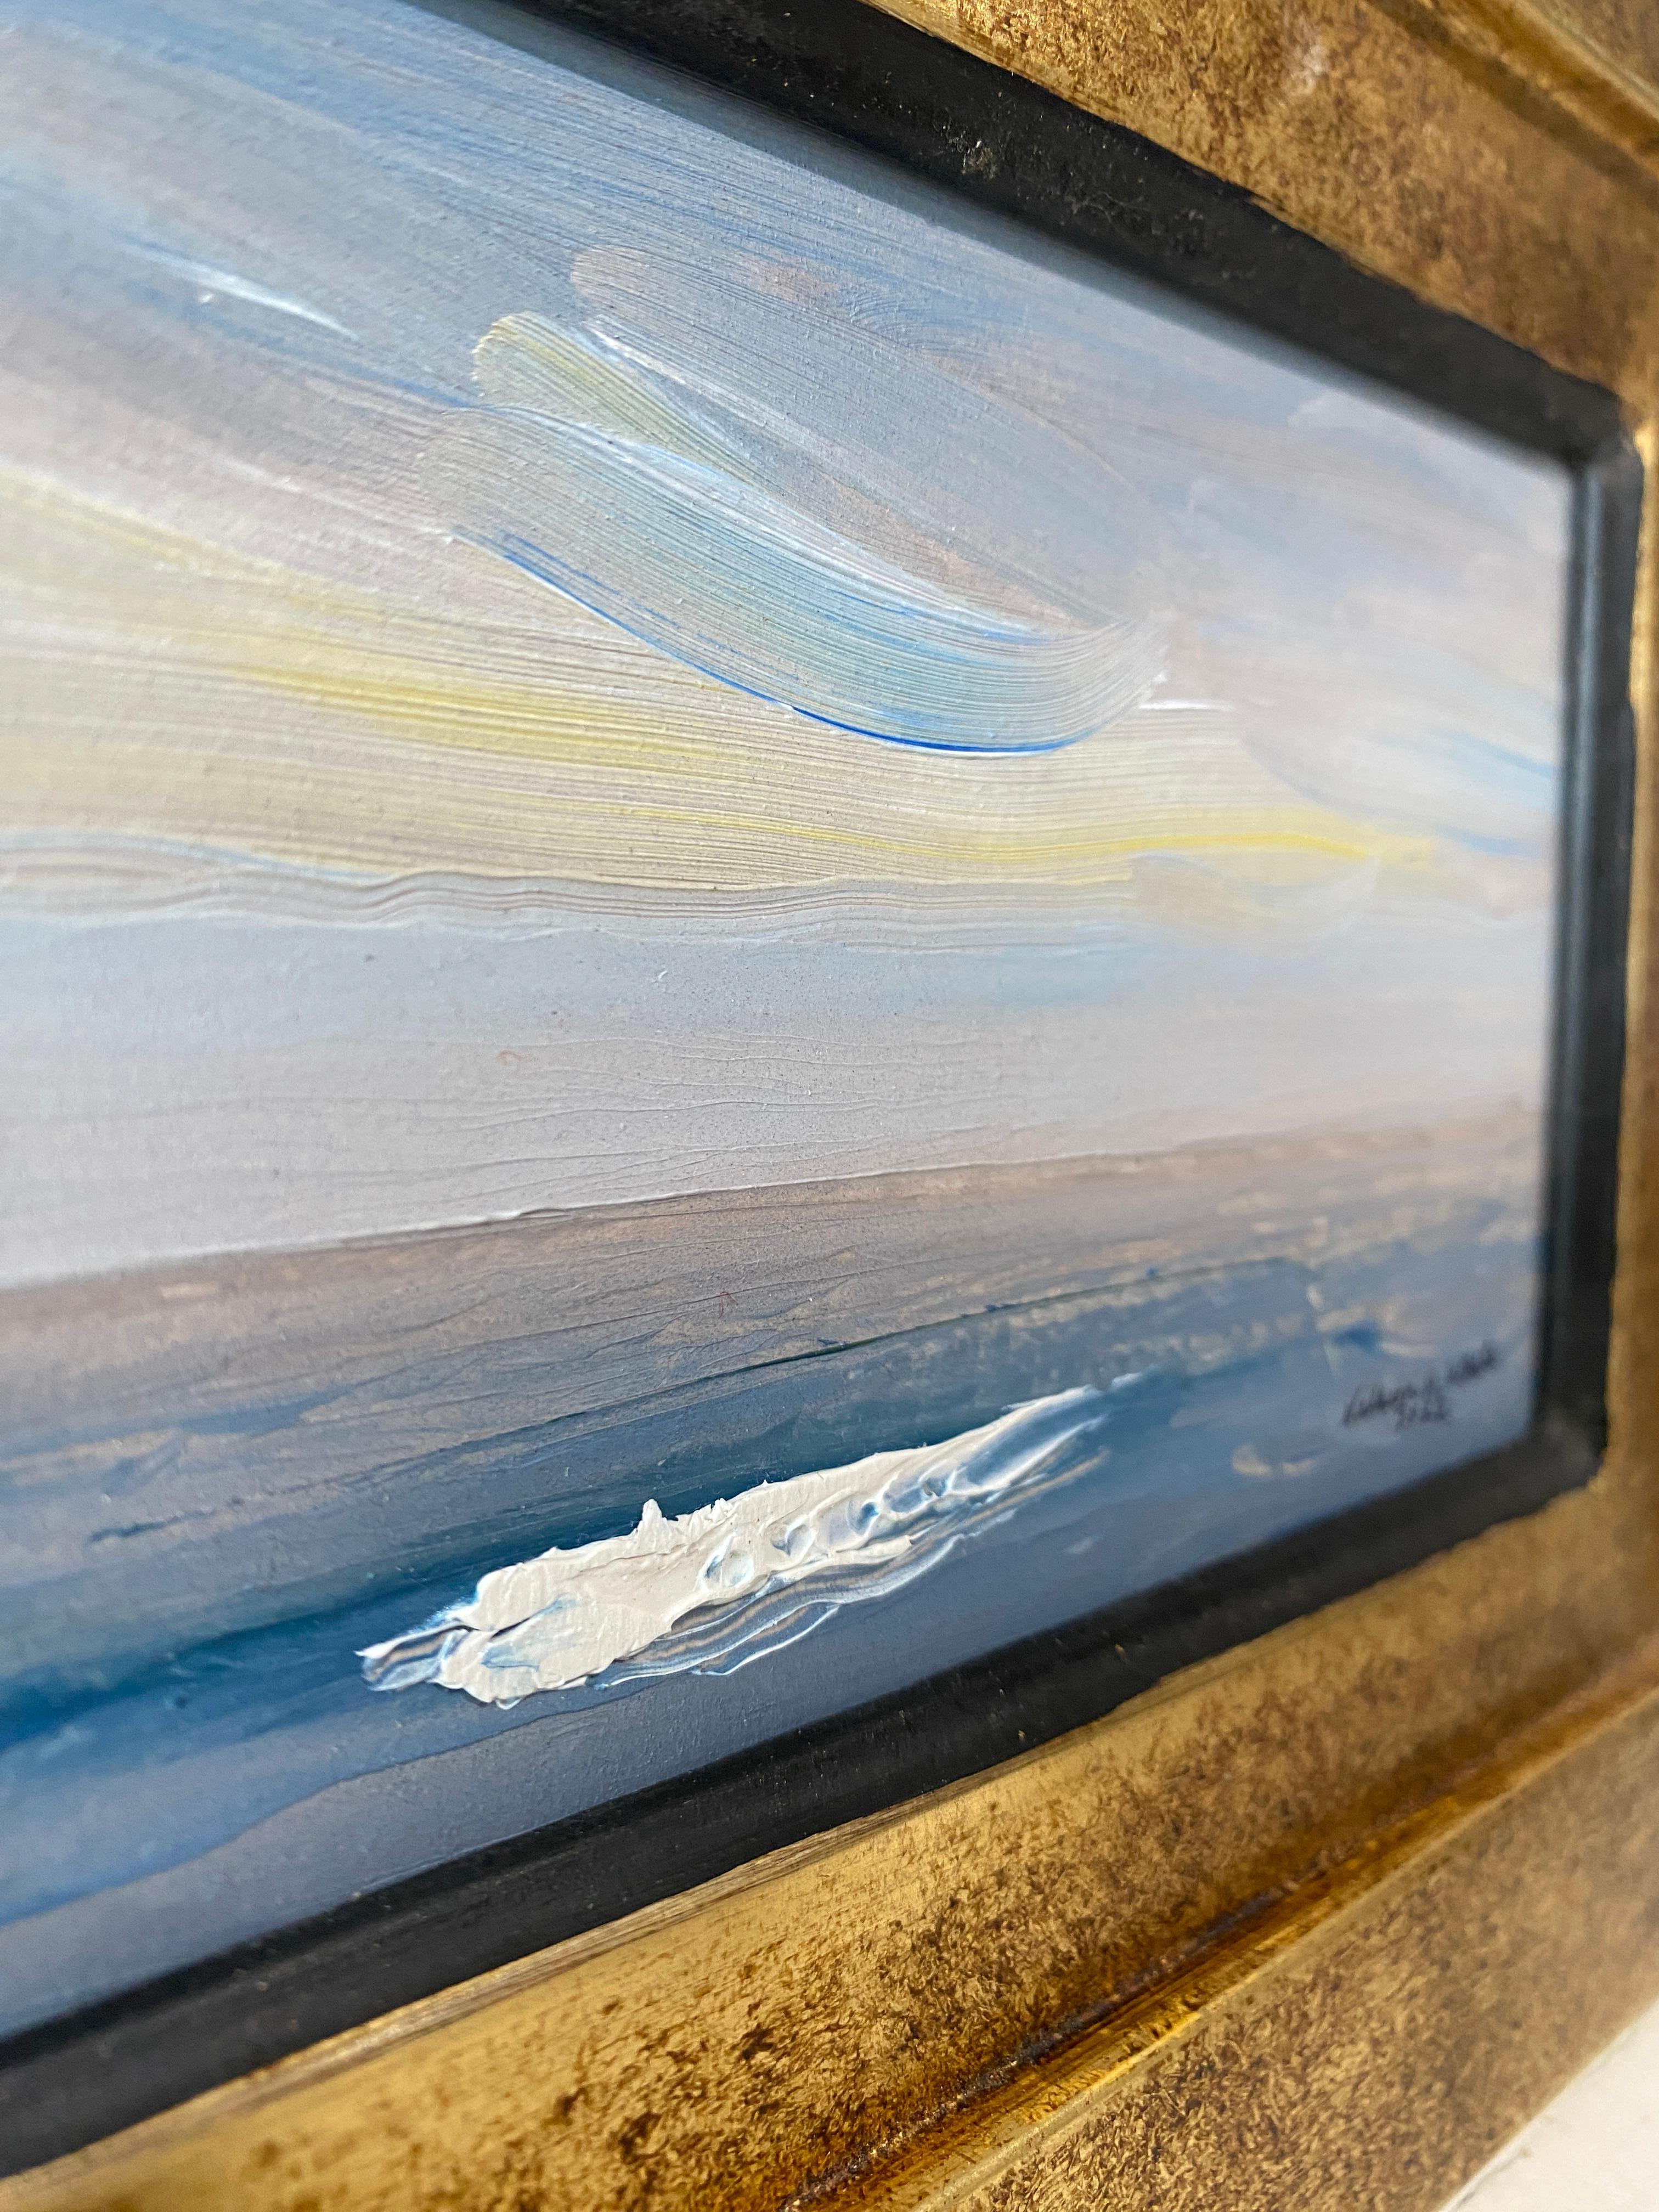 Une peinture de plein air sereine de Nelson Whiting, avec ses empâtements reconnaissables de whitecaps. Une mer d'un bleu profond rencontre un horizon brun lilas, et remonte dans le ciel bleu, orné de lumière jaune. 

Encadré dans un cadre italien